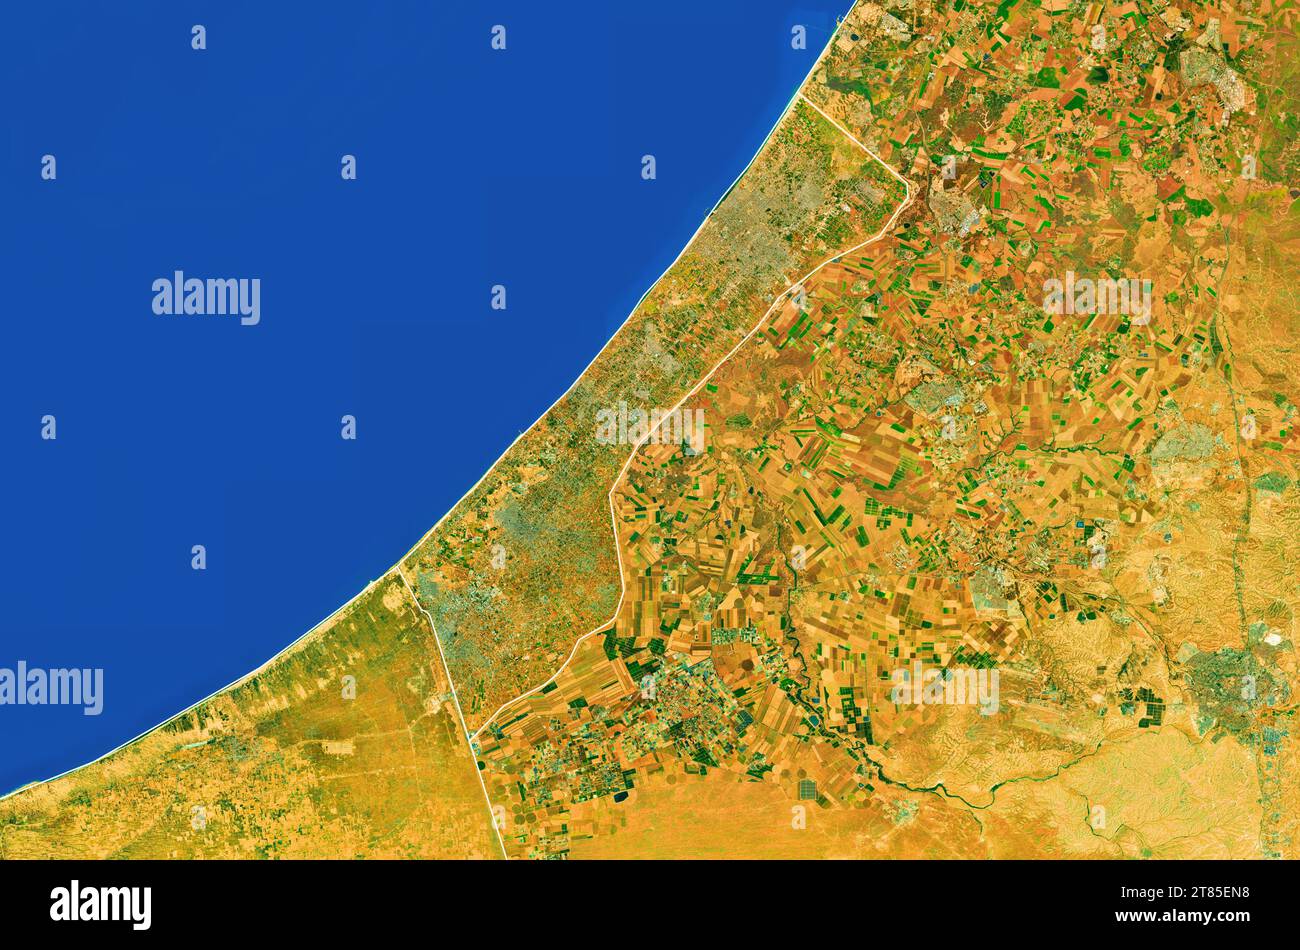 Gaza, Palestina - Mappa ravvicinata della Striscia di Gaza, vista satellitare, vista dall'alto, bordo colorato, modificato Foto Stock